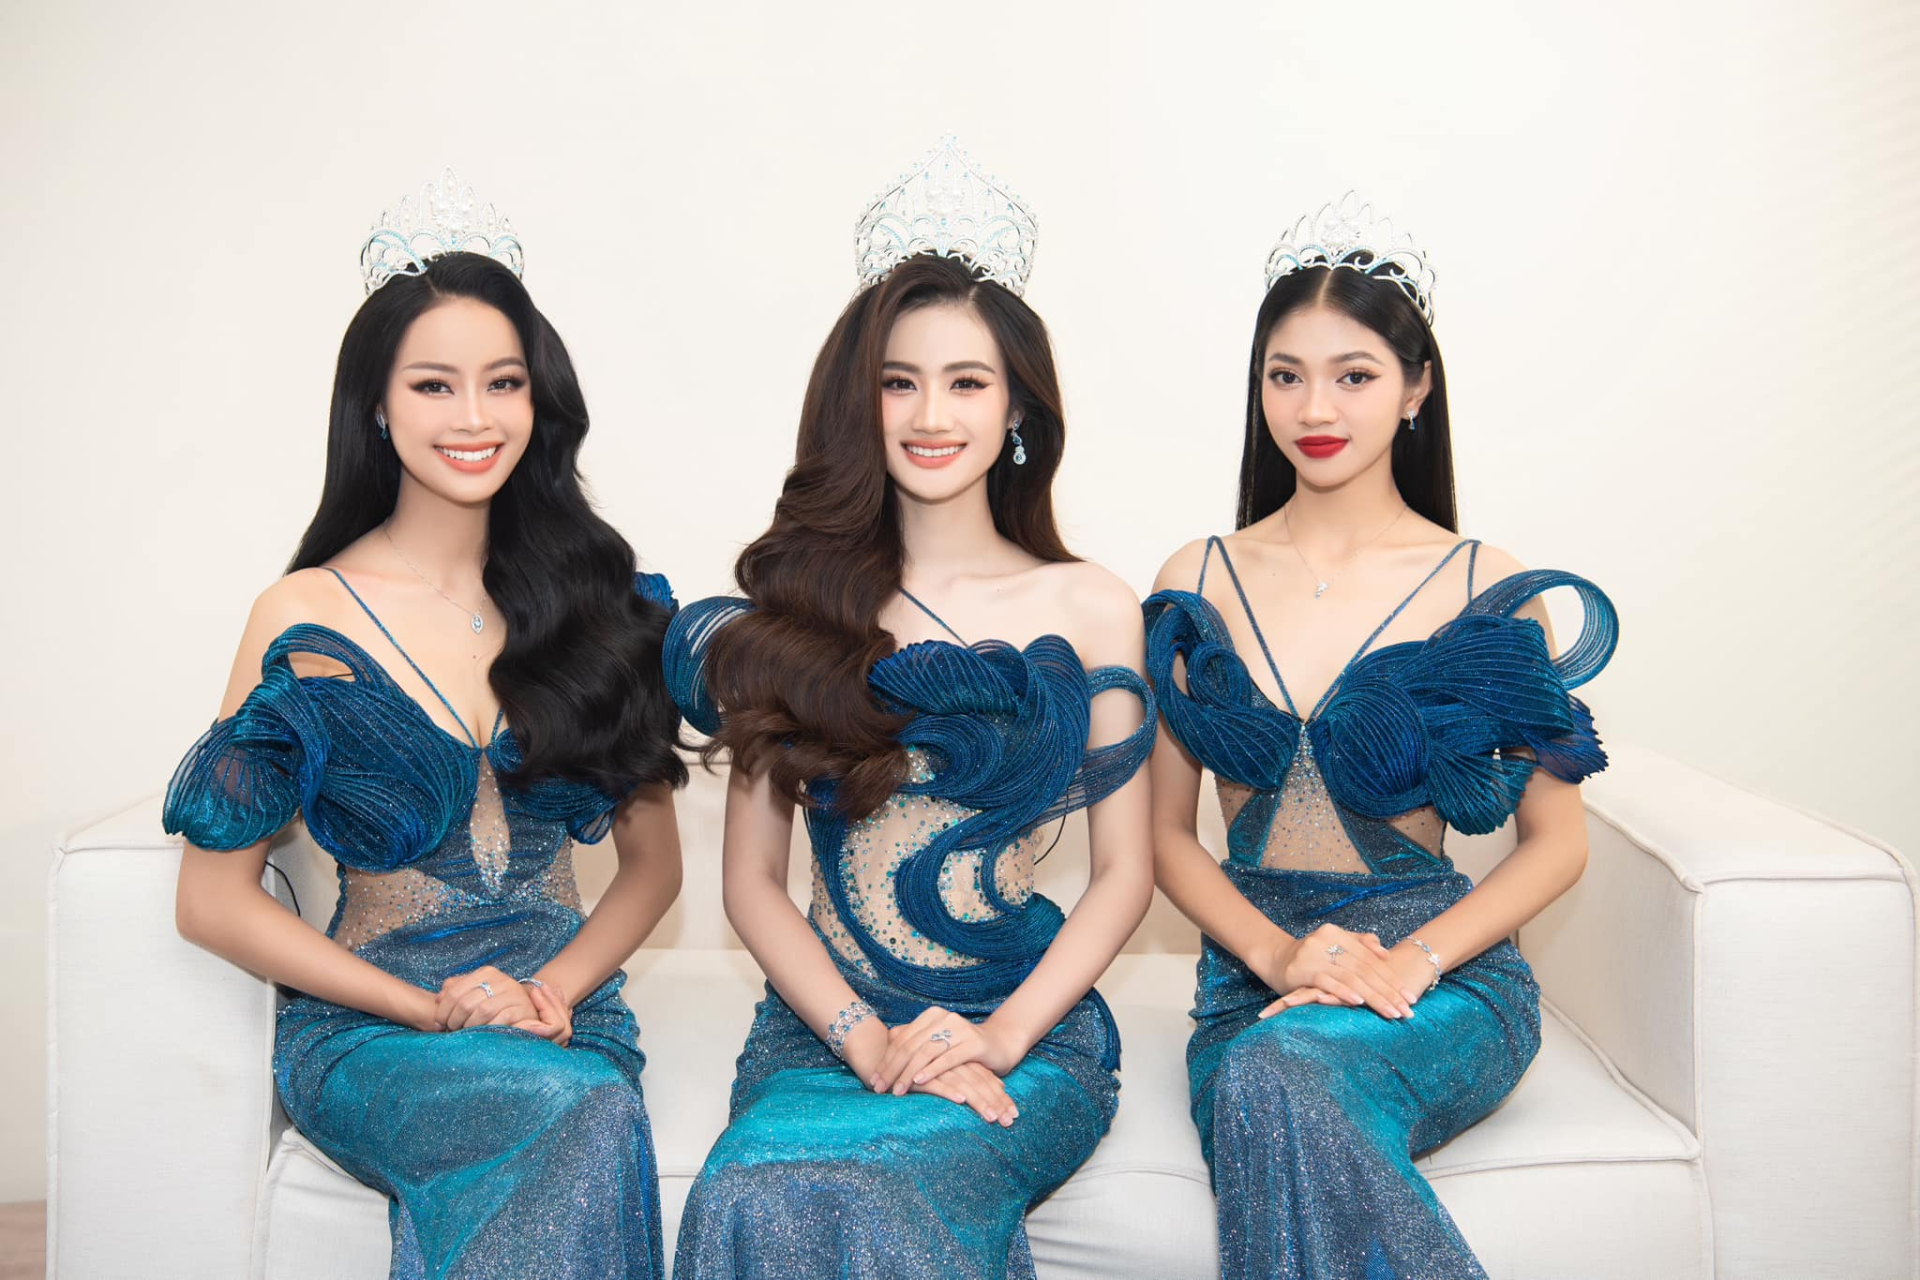 Sáng nay Sở Văn hóa Thể thao tỉnh Bình Định làm việc với BTC Miss World Vietnam, Ý Nhi có bị tước danh hiệu? - ảnh 2